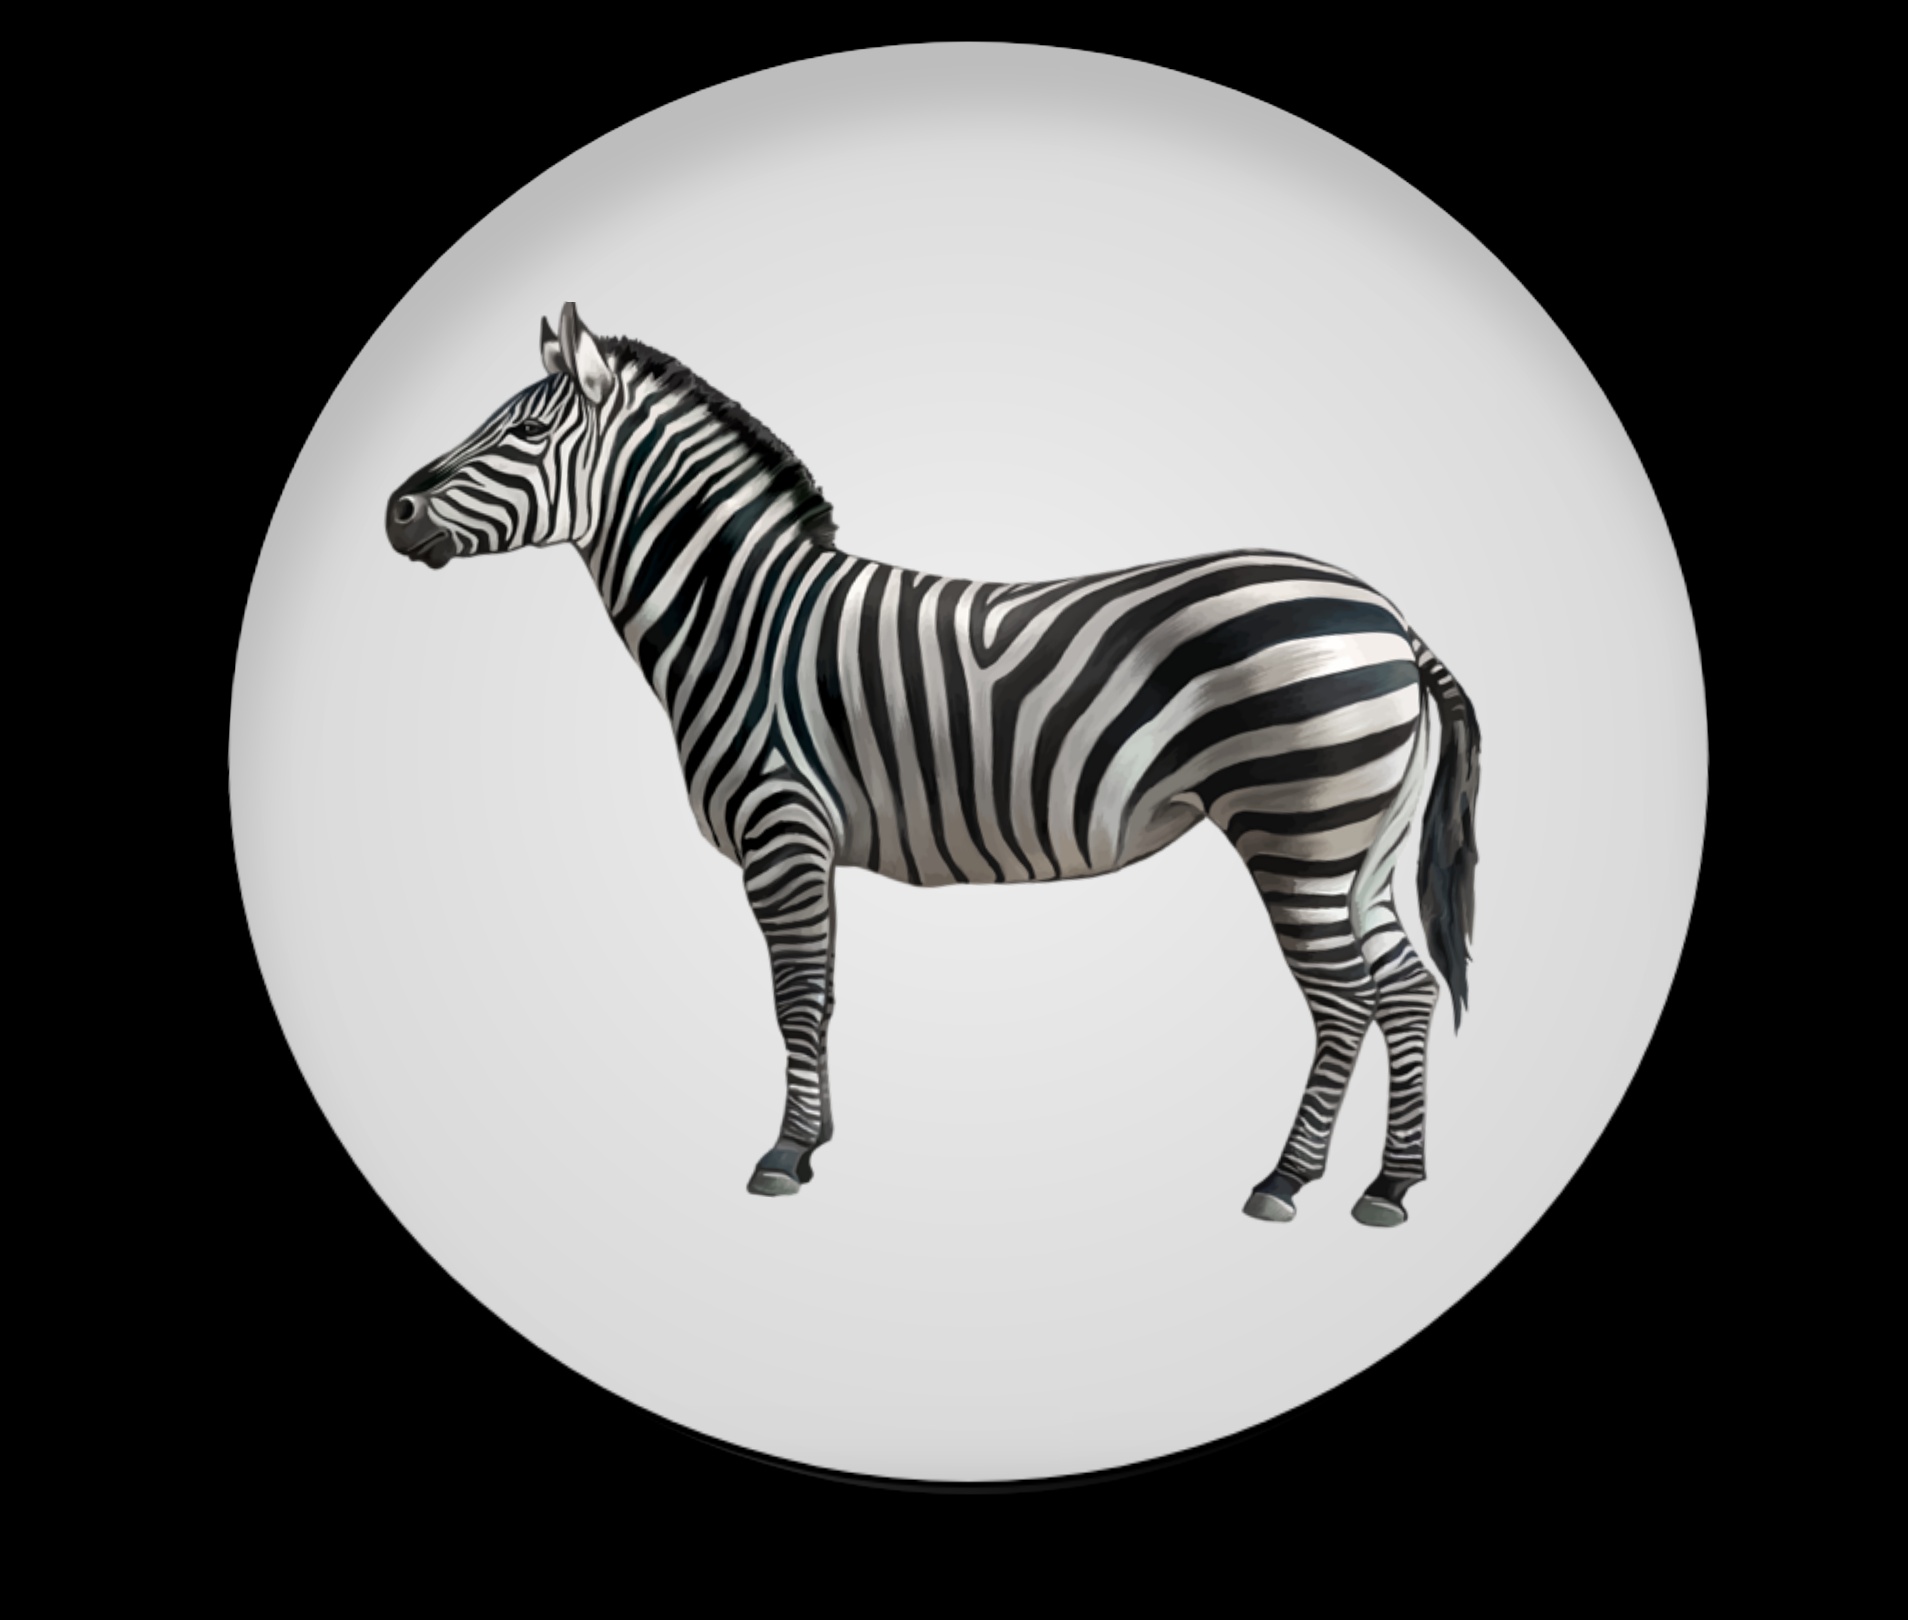 Awesome Artwork Zebra Logo Designs preview image.